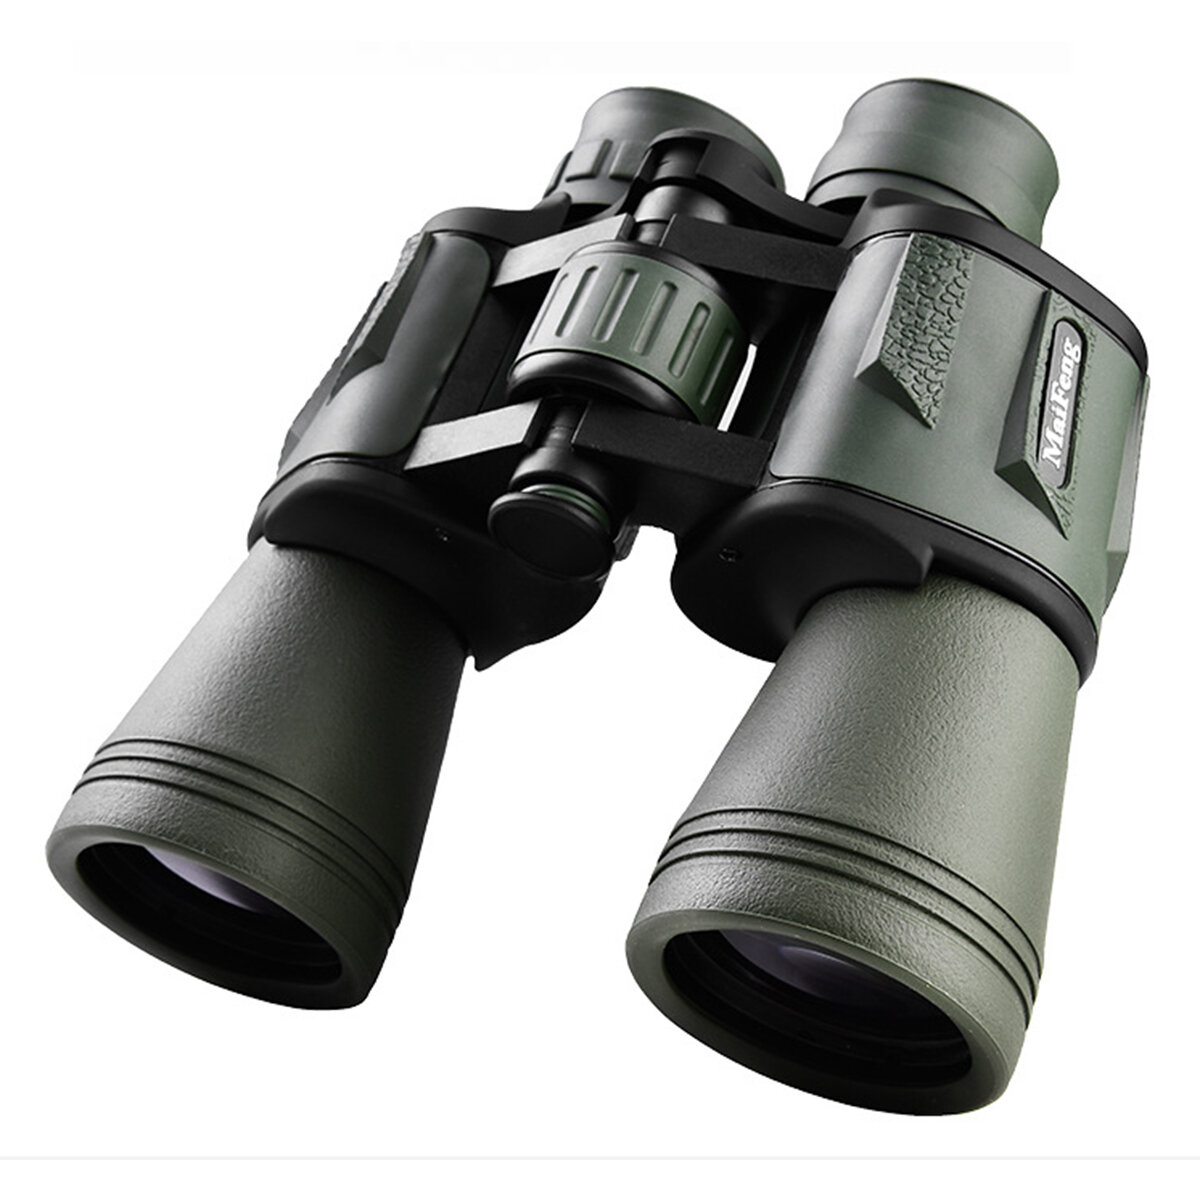 Télescope professionnel haute puissance 20X50 à longue portée avec jumelles haute définition pour vision nocturne en plein air, chasse, camping et voyages.